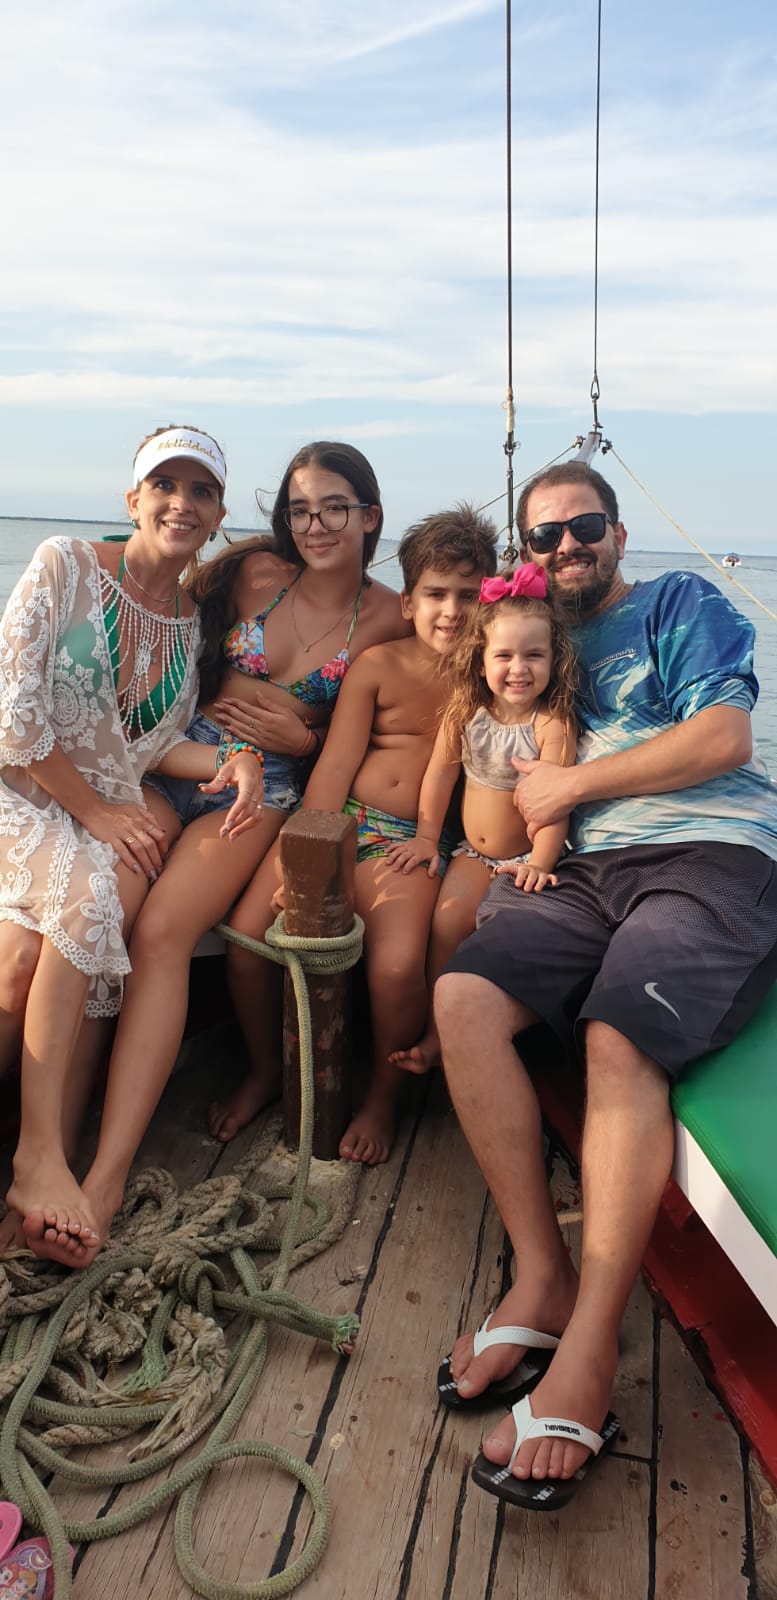 Uma família (um casal e três filhos) posa para a foto em um barco, em trajes de banho